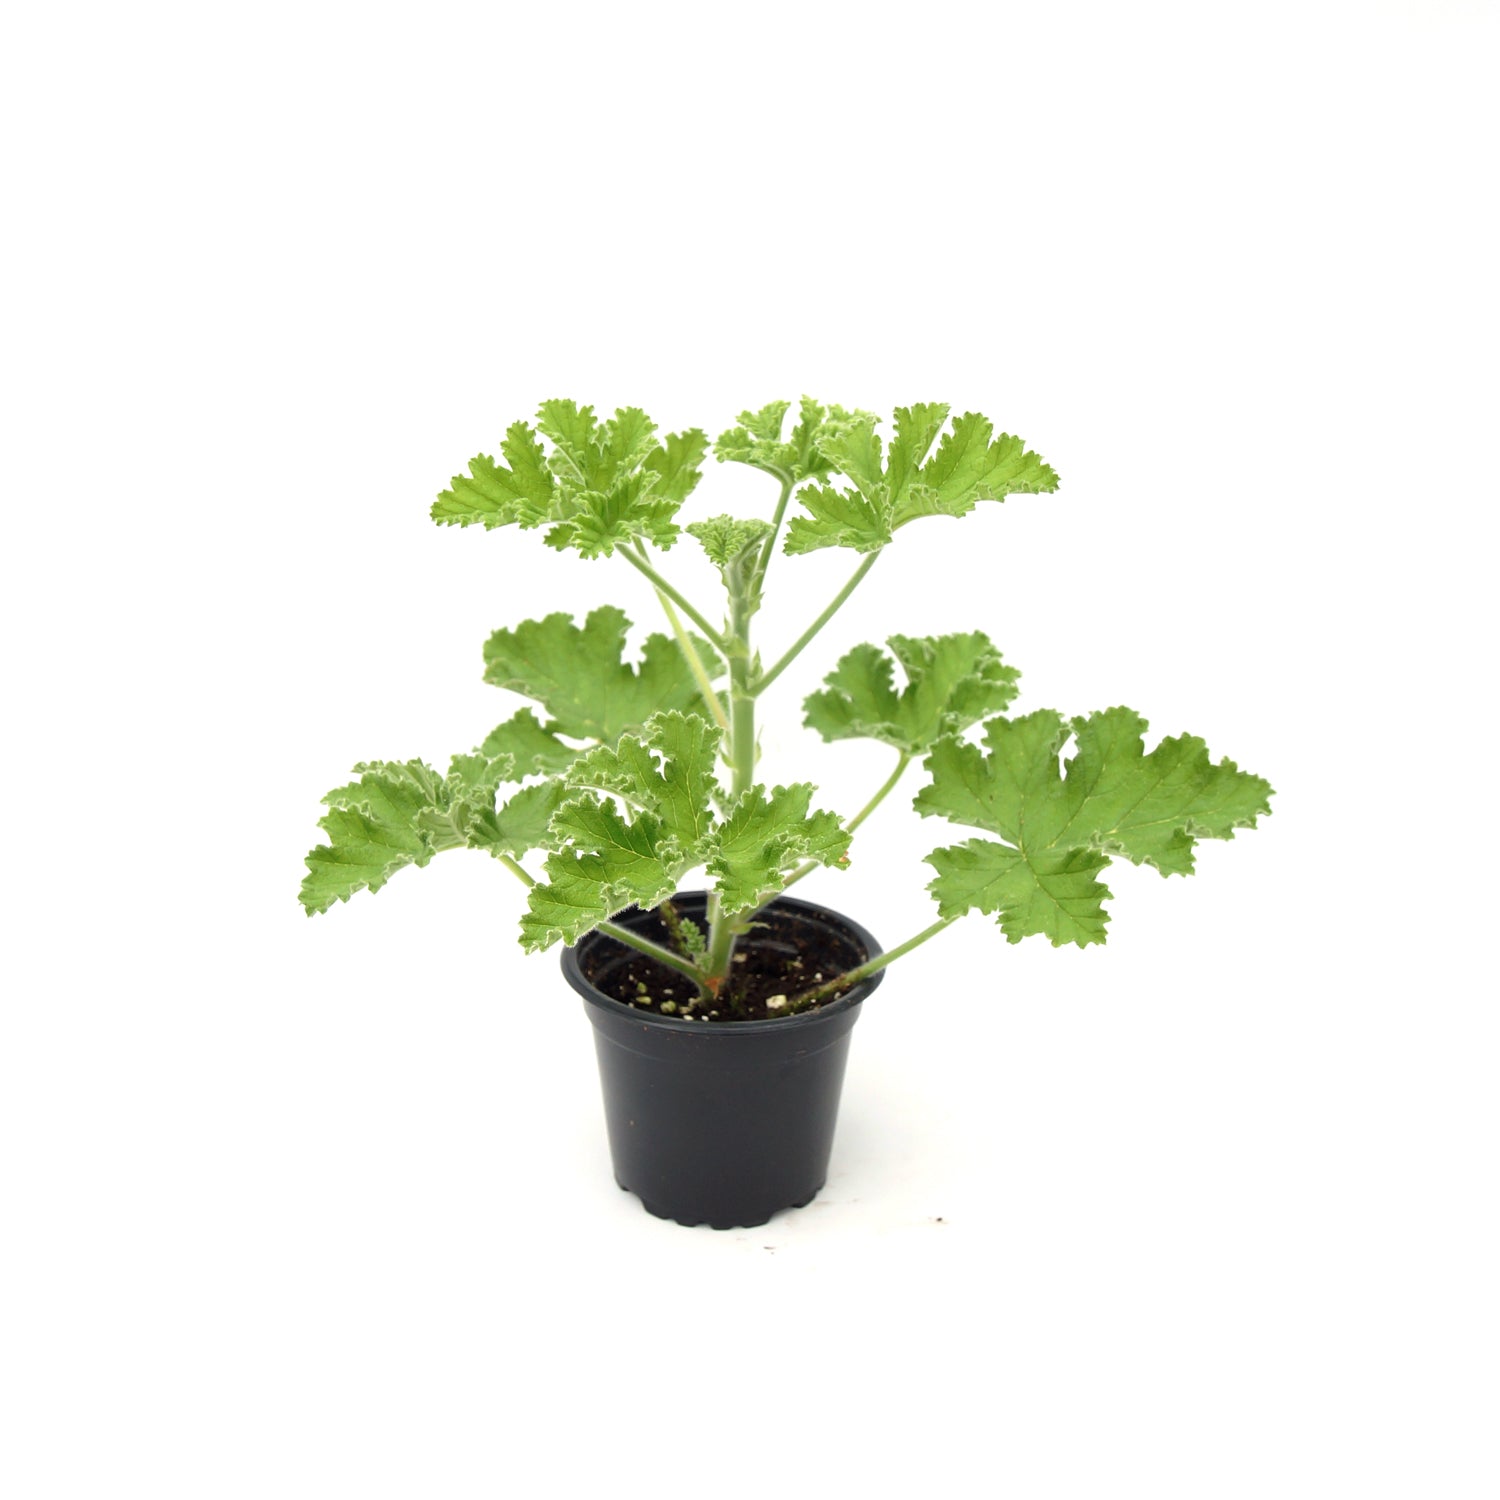 Pelargonium ‘Attar of Roses’ (Scented Geranium)